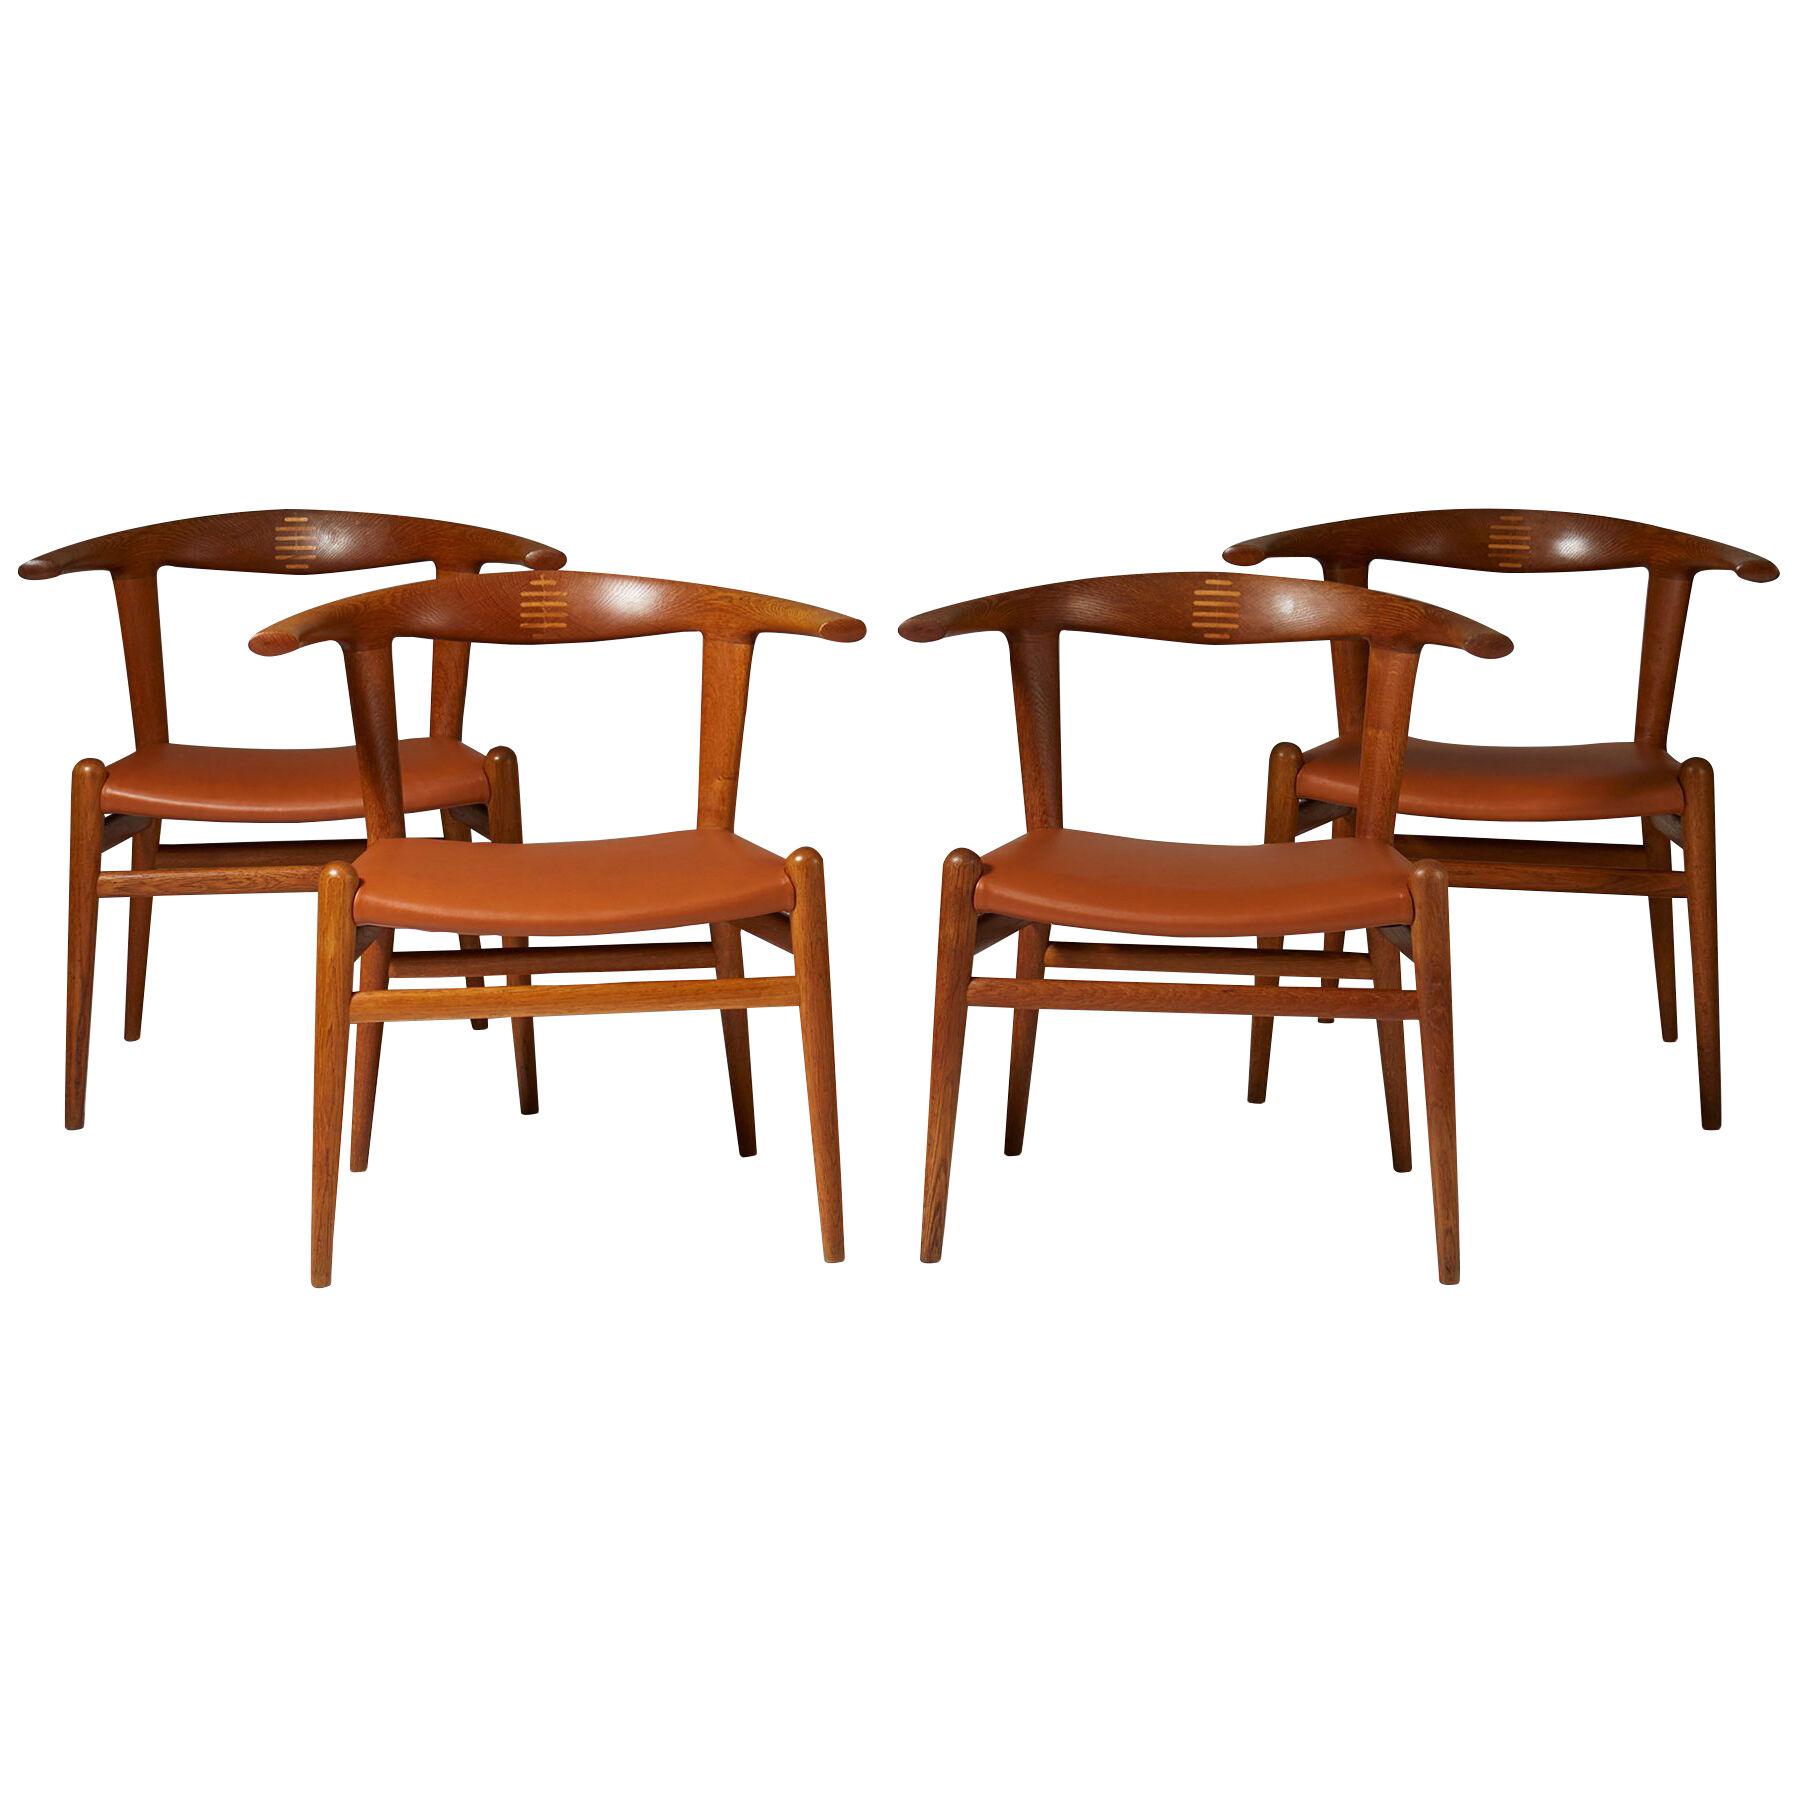 Set of four ‘Bull’ armchairs model JH 518 designed by Hans Wegner